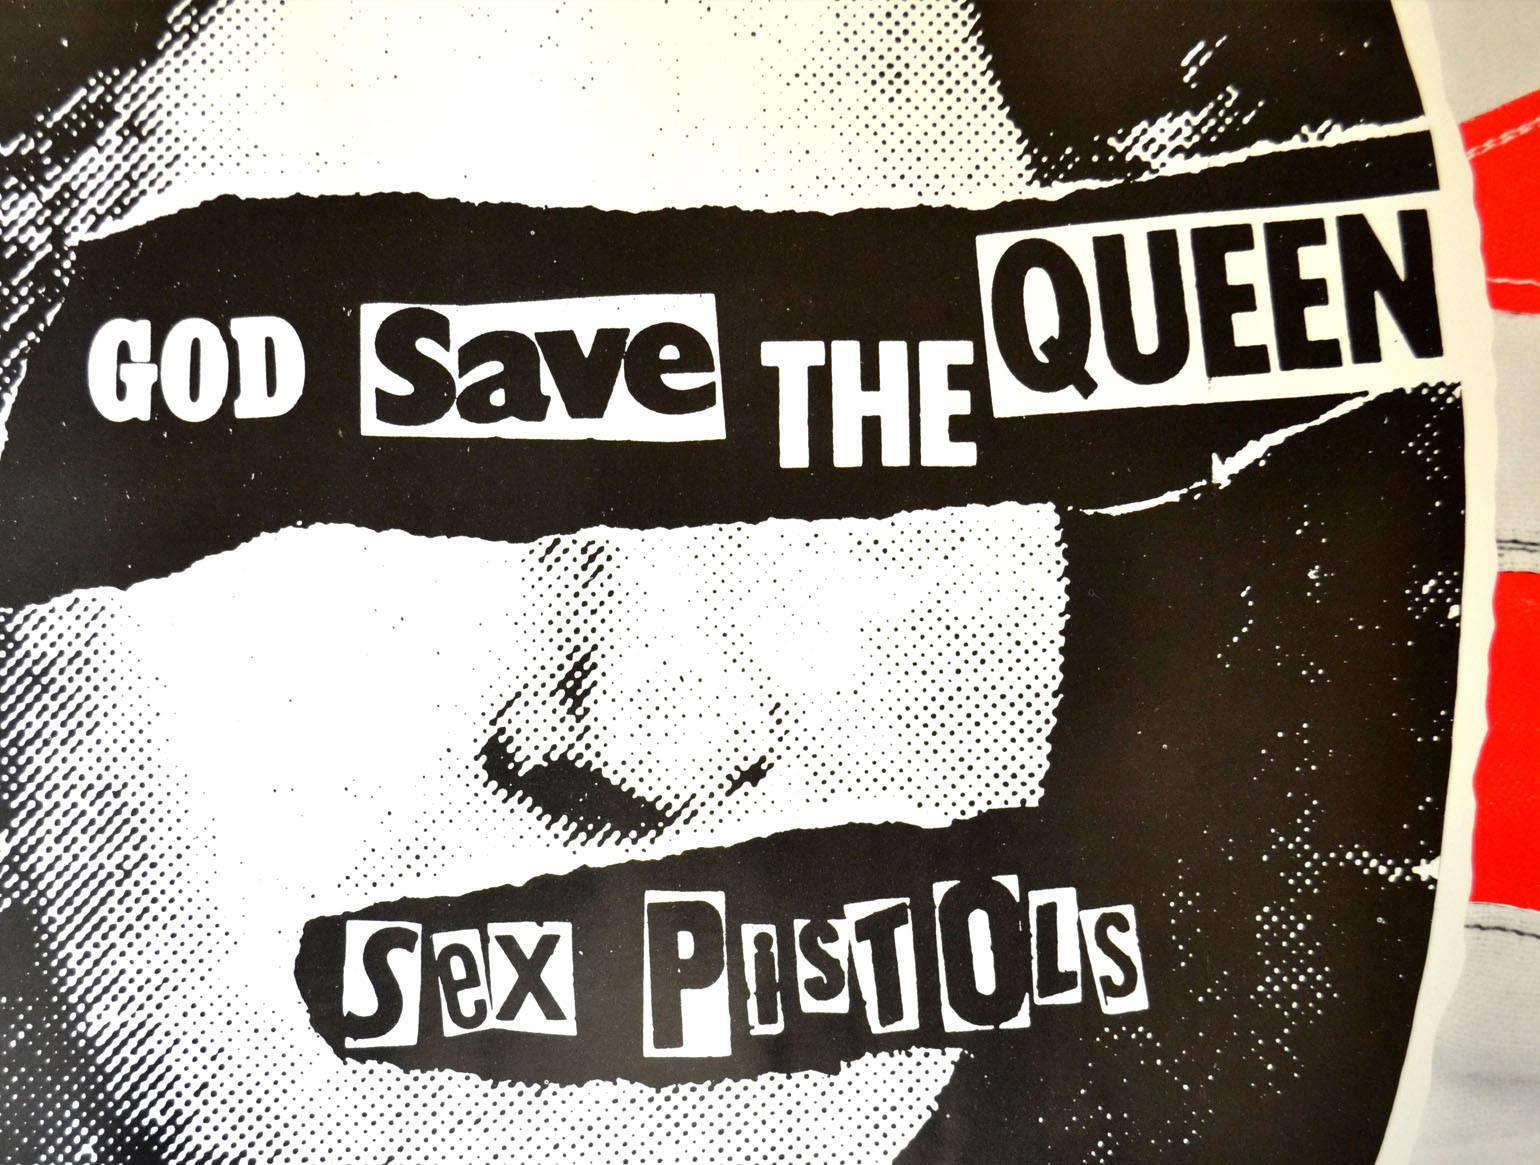 Sex Pistols - Poster promotionnel original de God Save the Queen Excellent état à London, GB